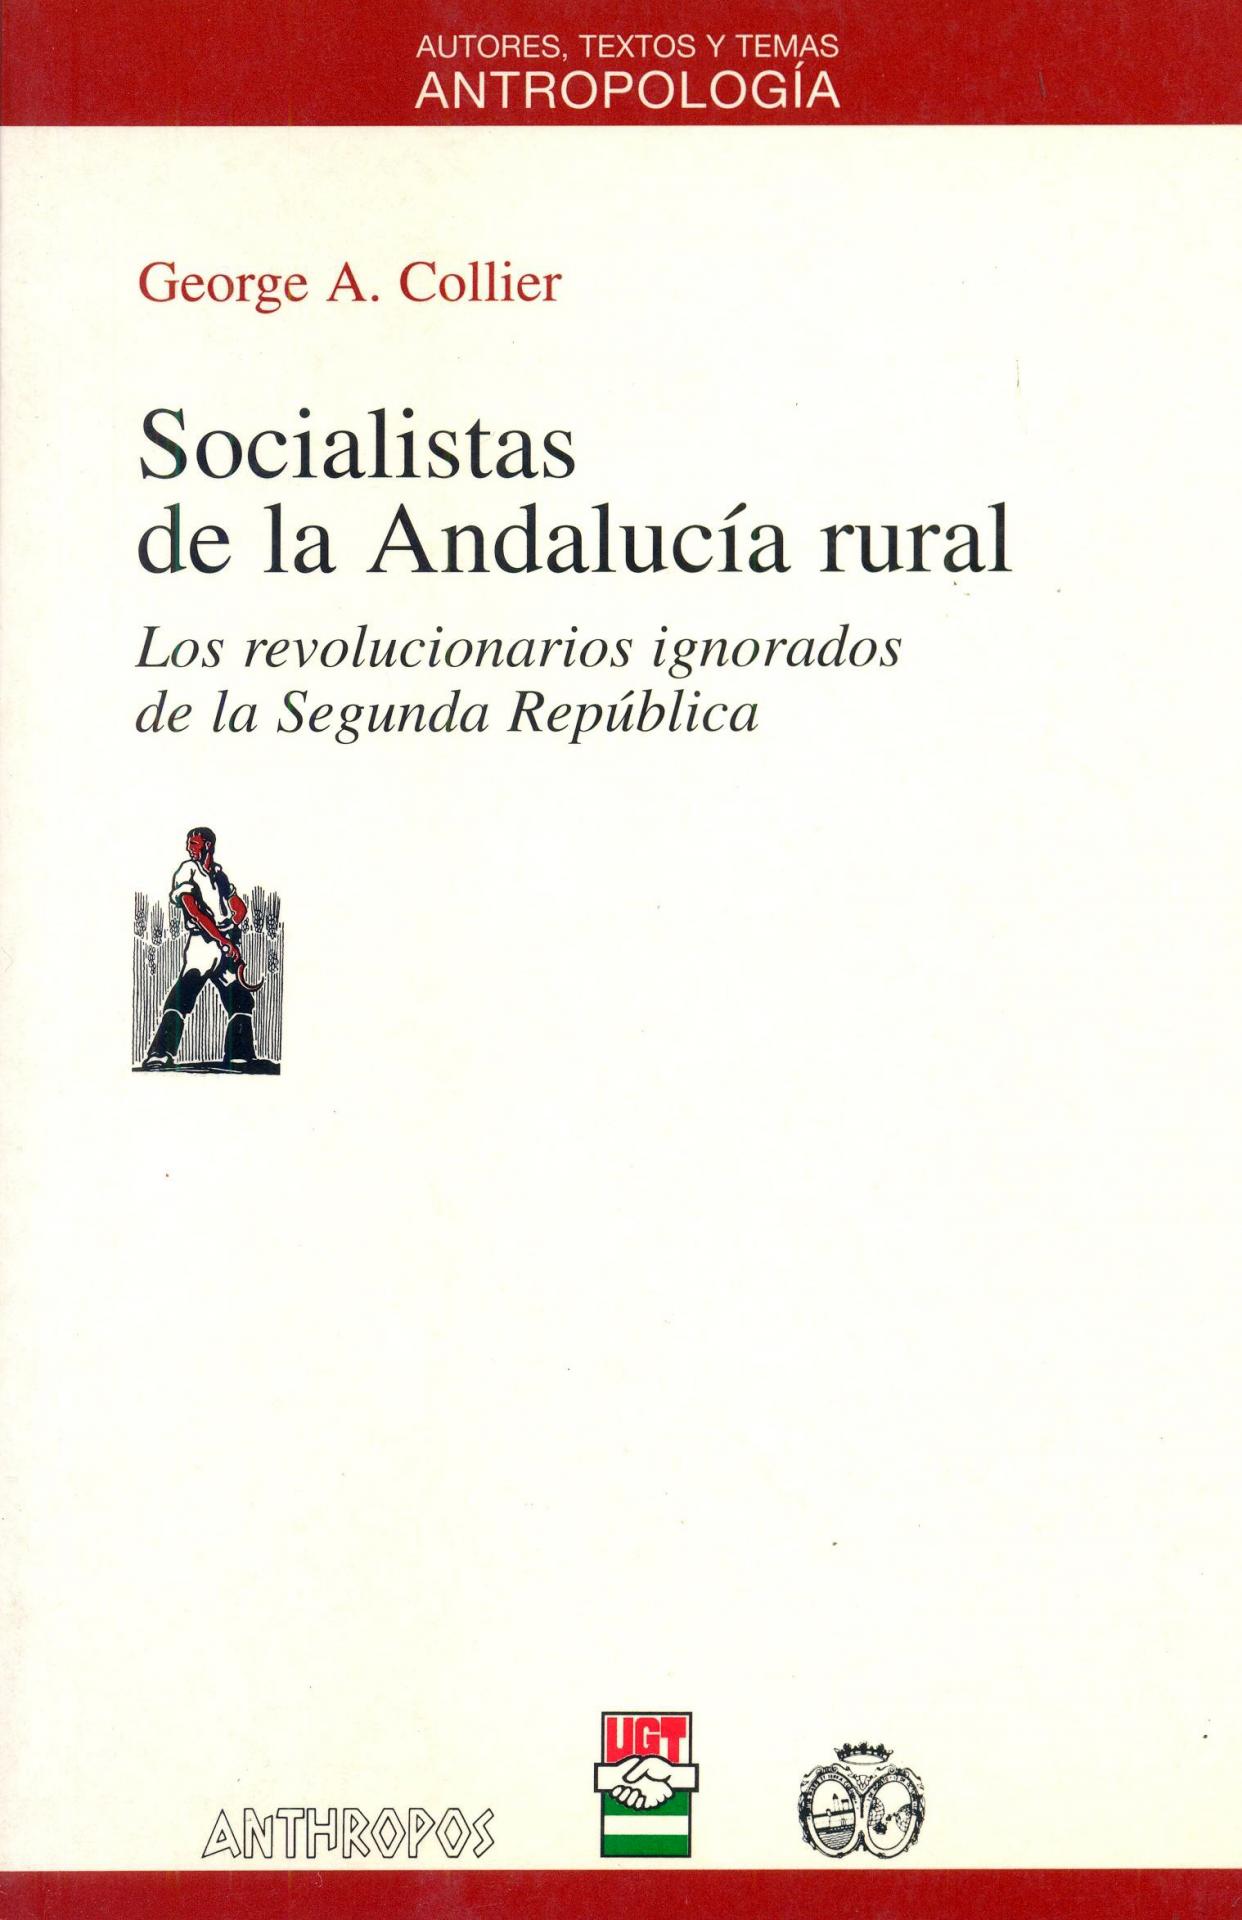 SOCIALISTAS DE LA ANDALUCÍA RURAL. Los revolucionarios ignorados de la Segunda República. Collier, GA.